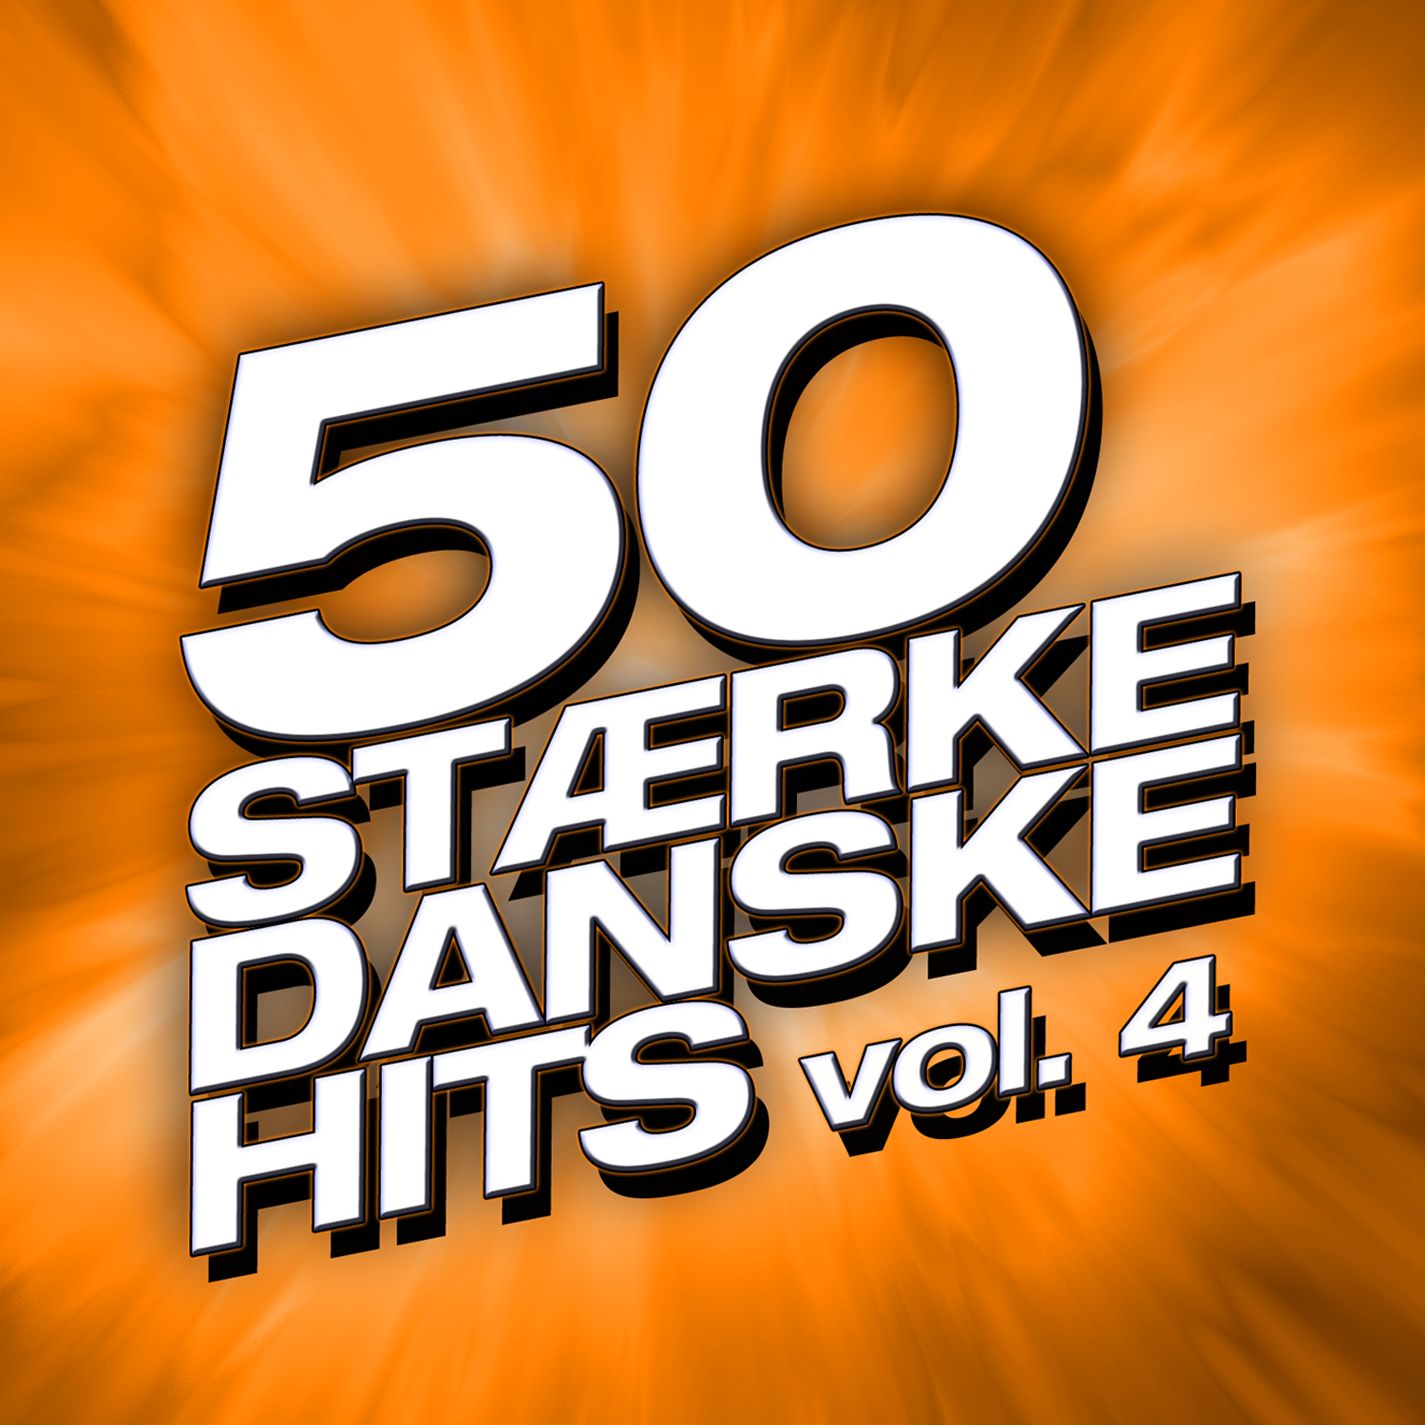 50 St rke Danske Hits Vol. 4